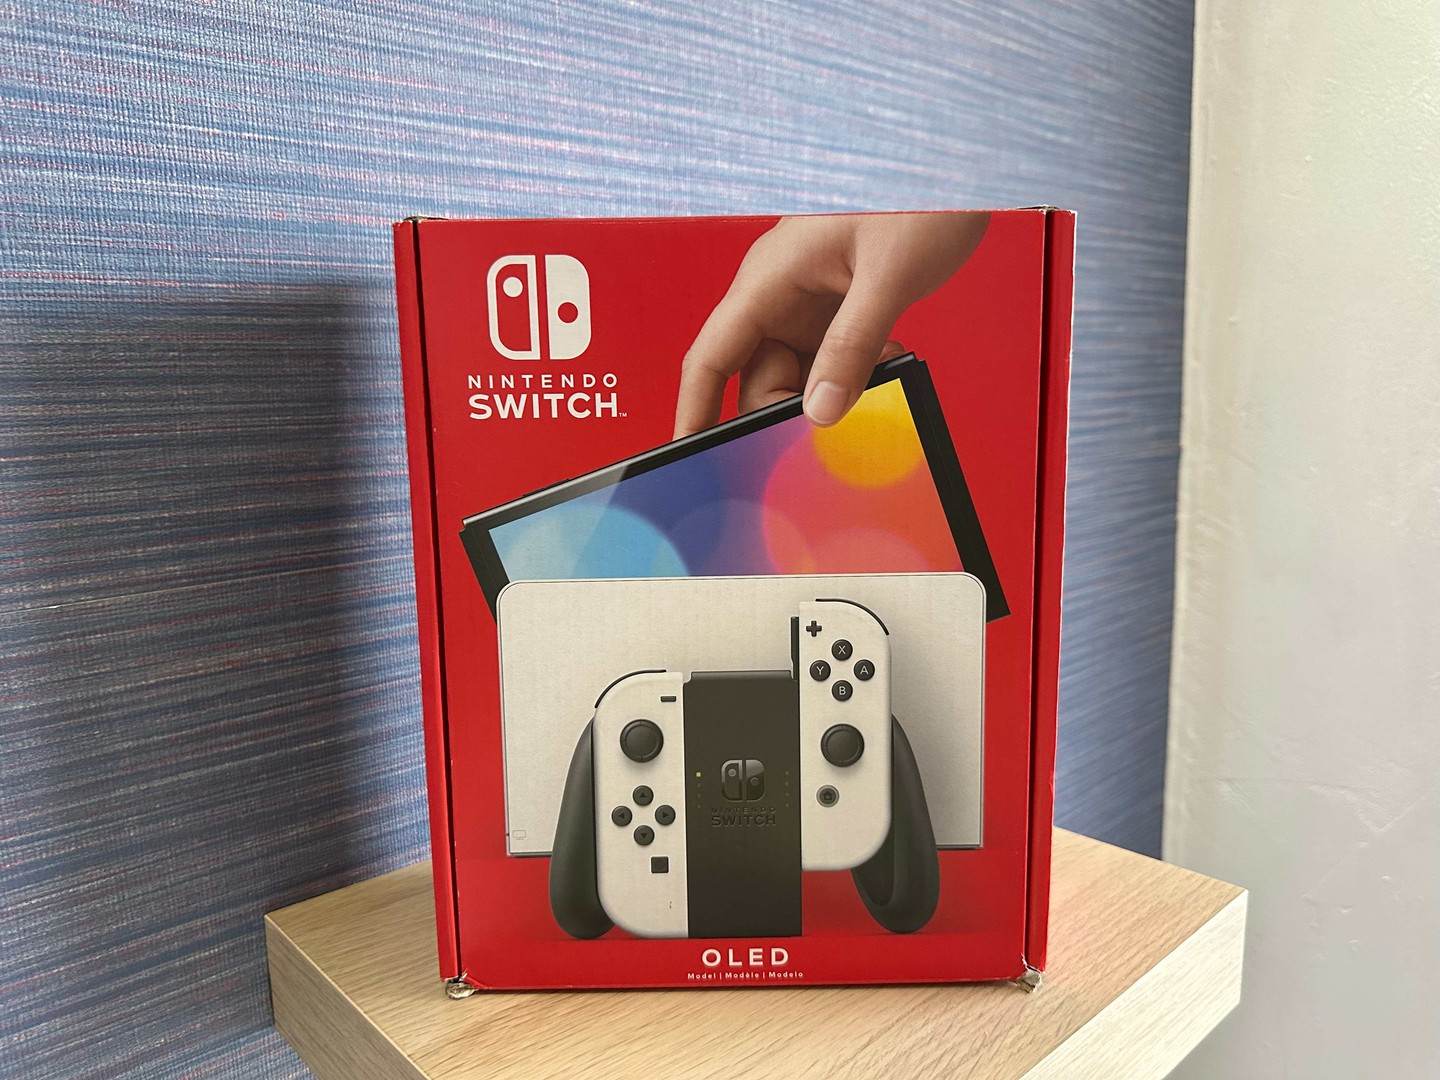 consolas y videojuegos - Vendo Nintendo Switch Oled Blanco Nuevos Sellados, Garantía, RD$ 19,300 NEG 0